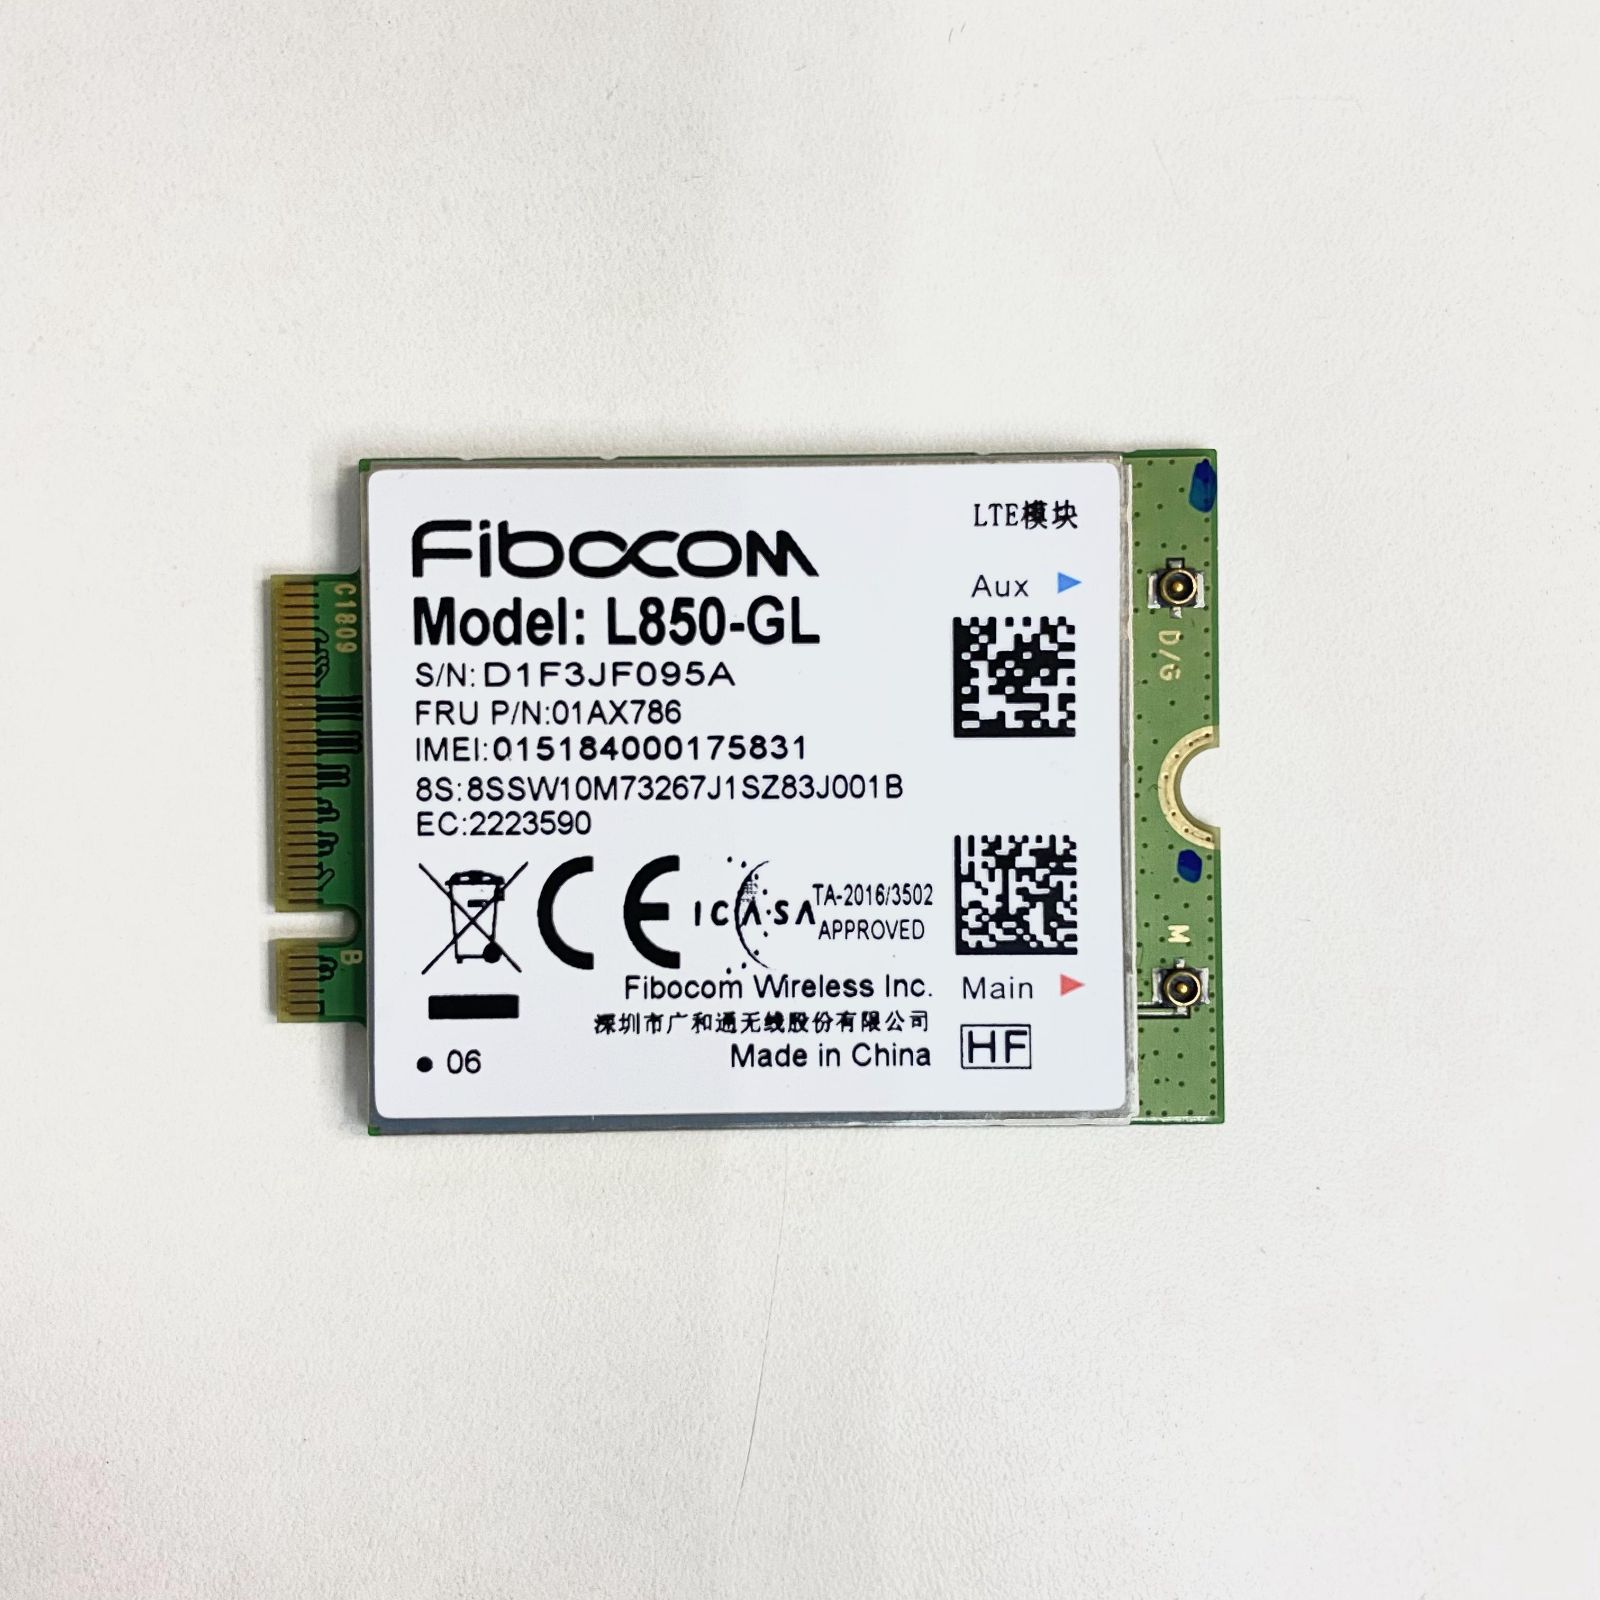 Fibocom L850-GL 4G Module - スマートライフショップ@クーポン配布中 ...